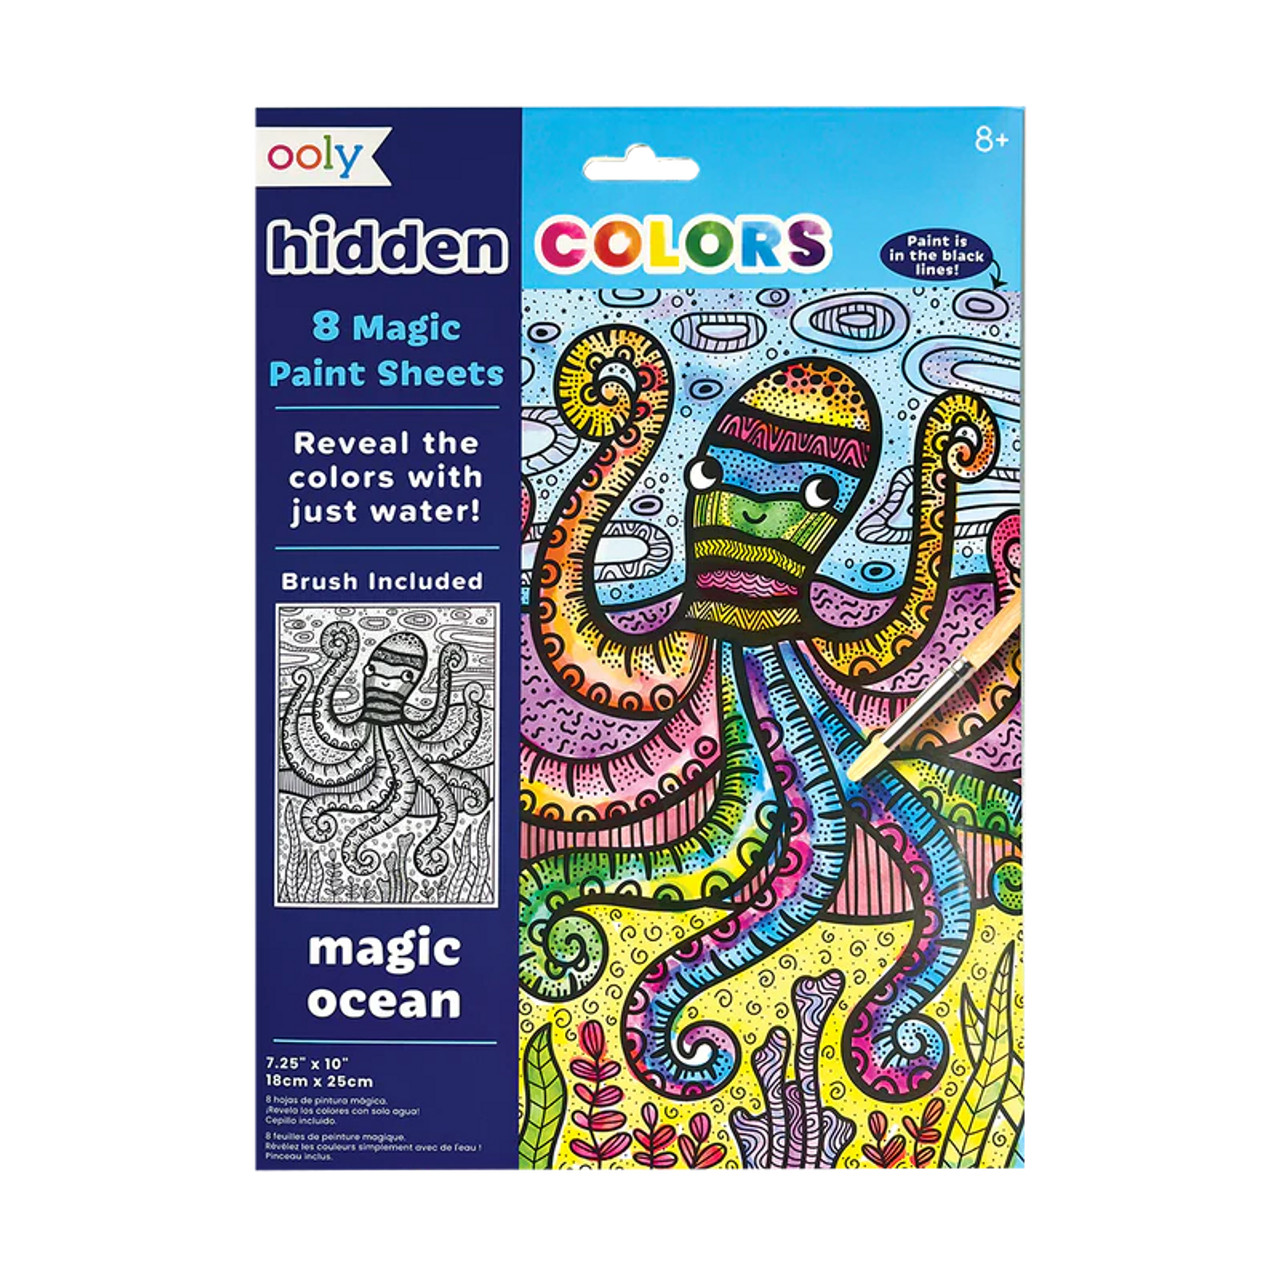 Magic Ocean Hidden Colors Magic Paint Sheets 9pc Set